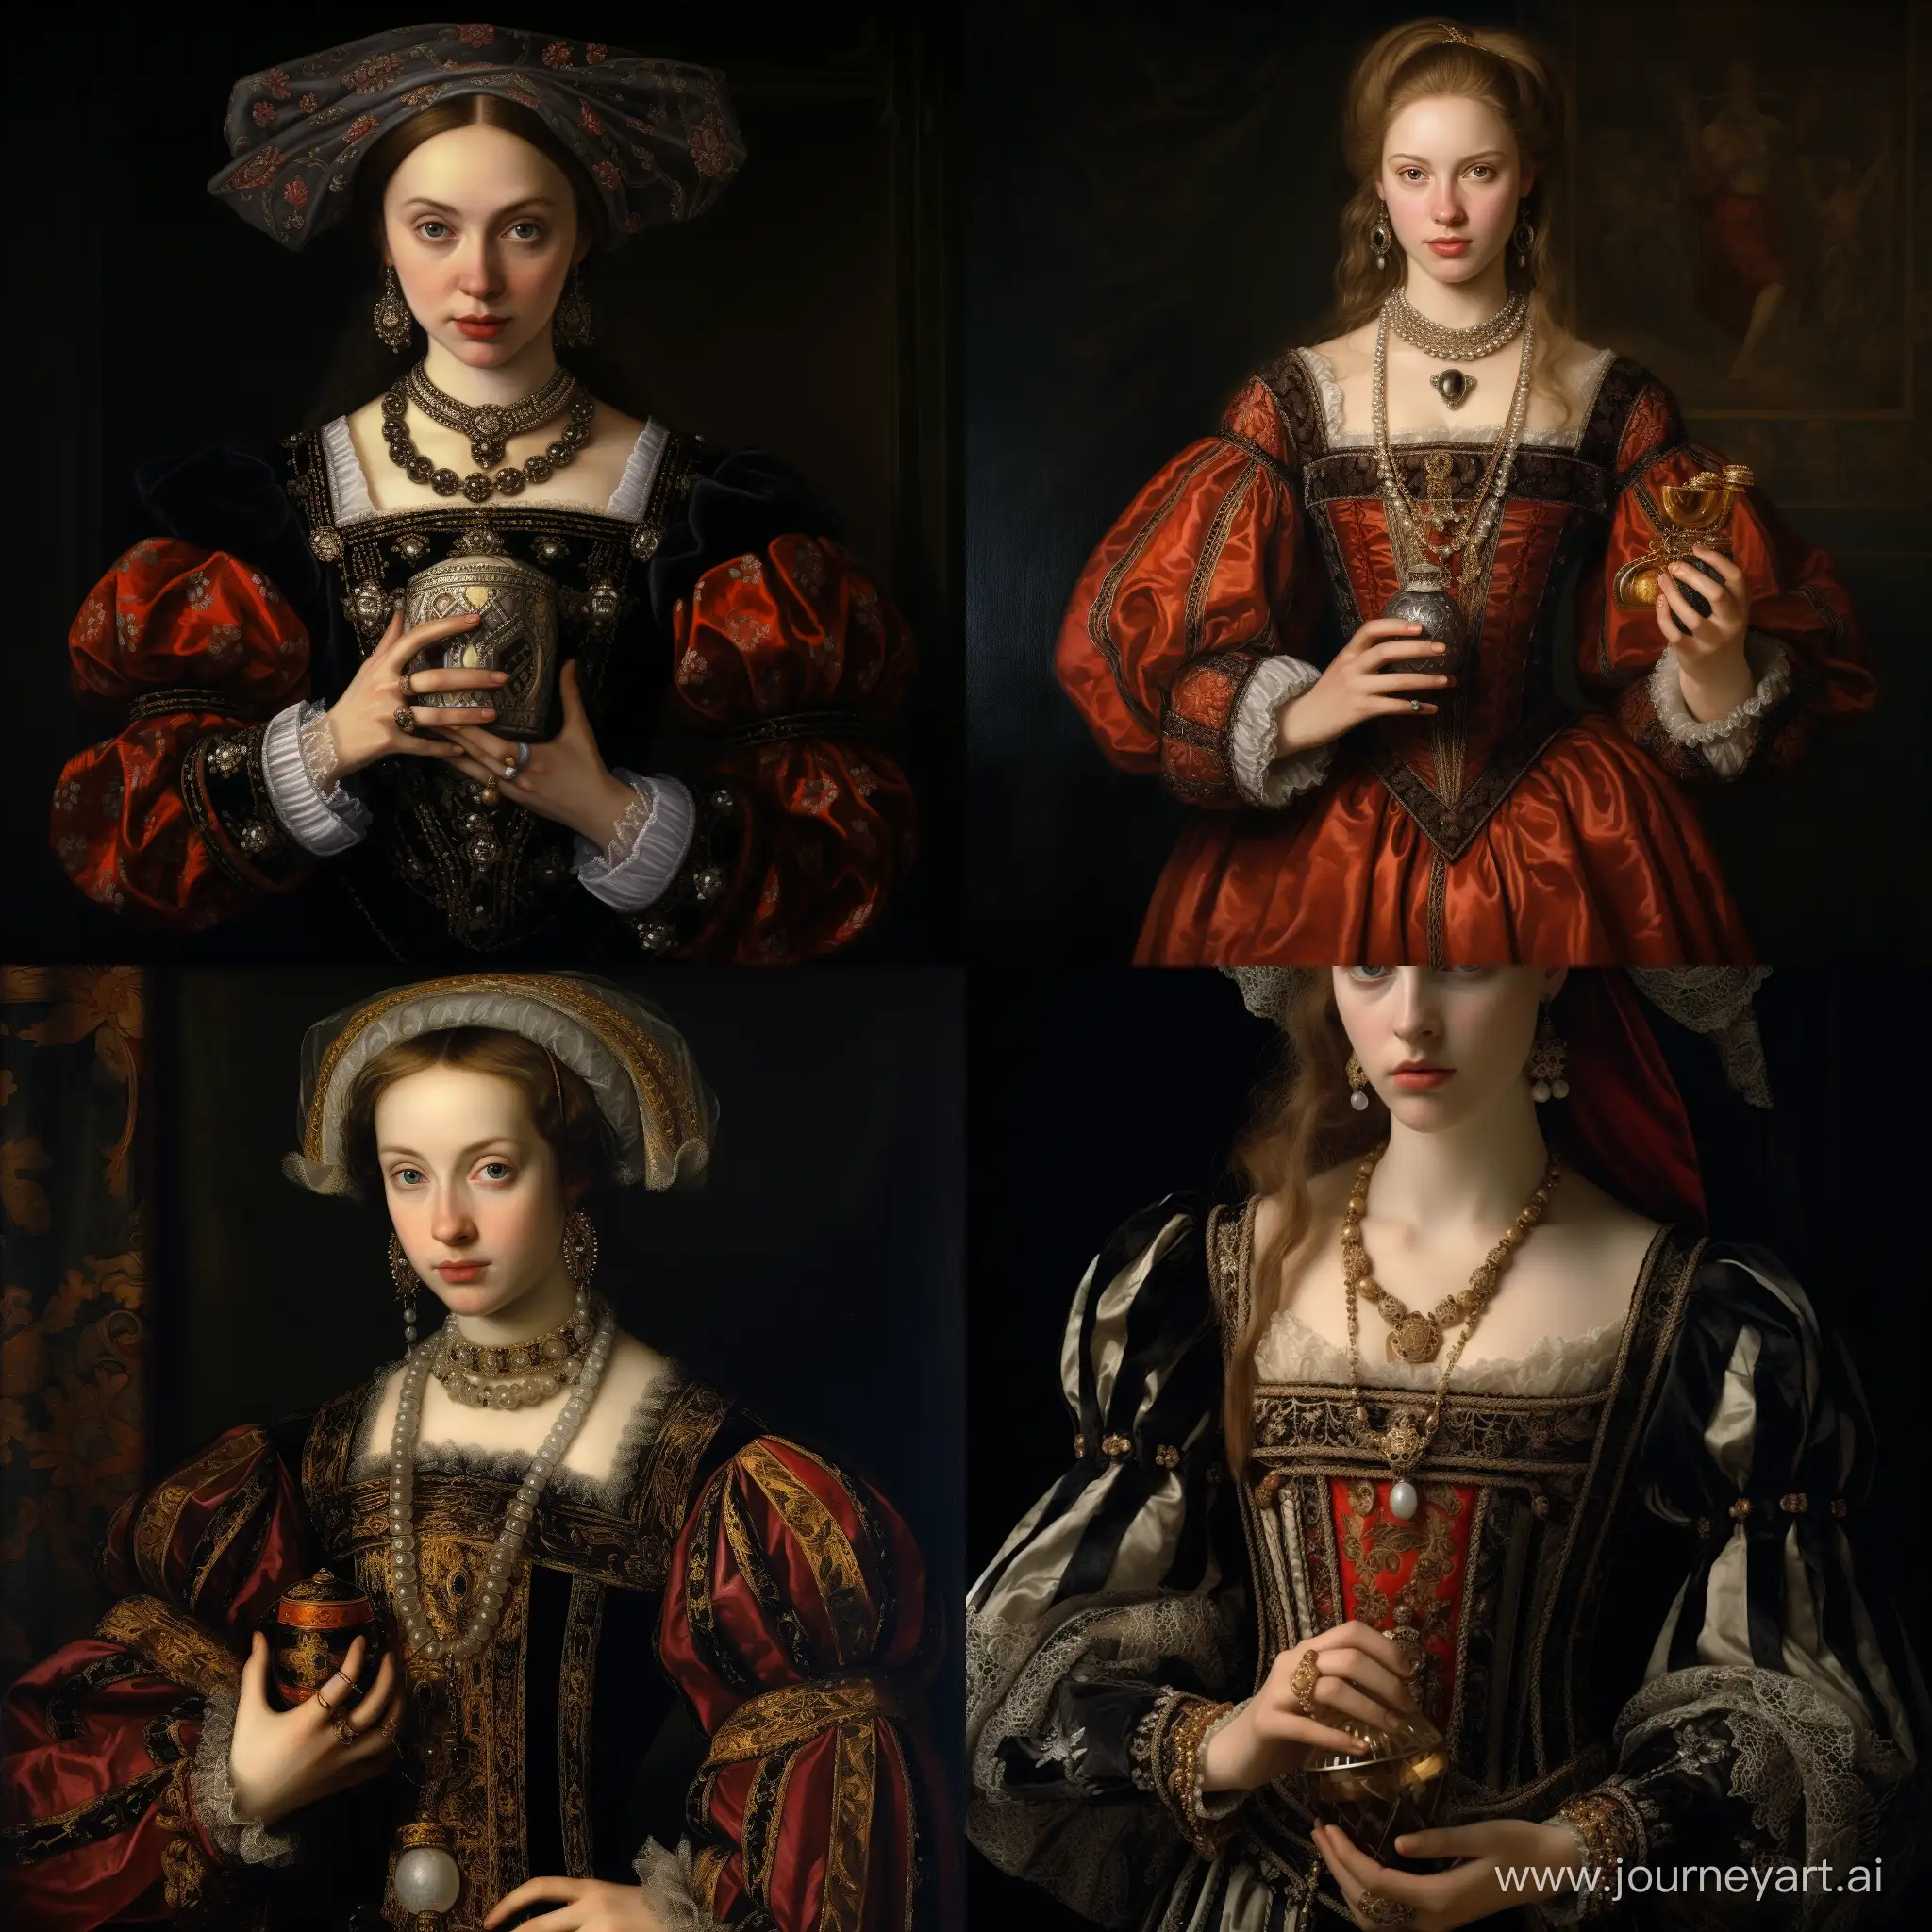 Женщина, 16 век, красивая одежда той эпохи, держит в руках флакон парфюма